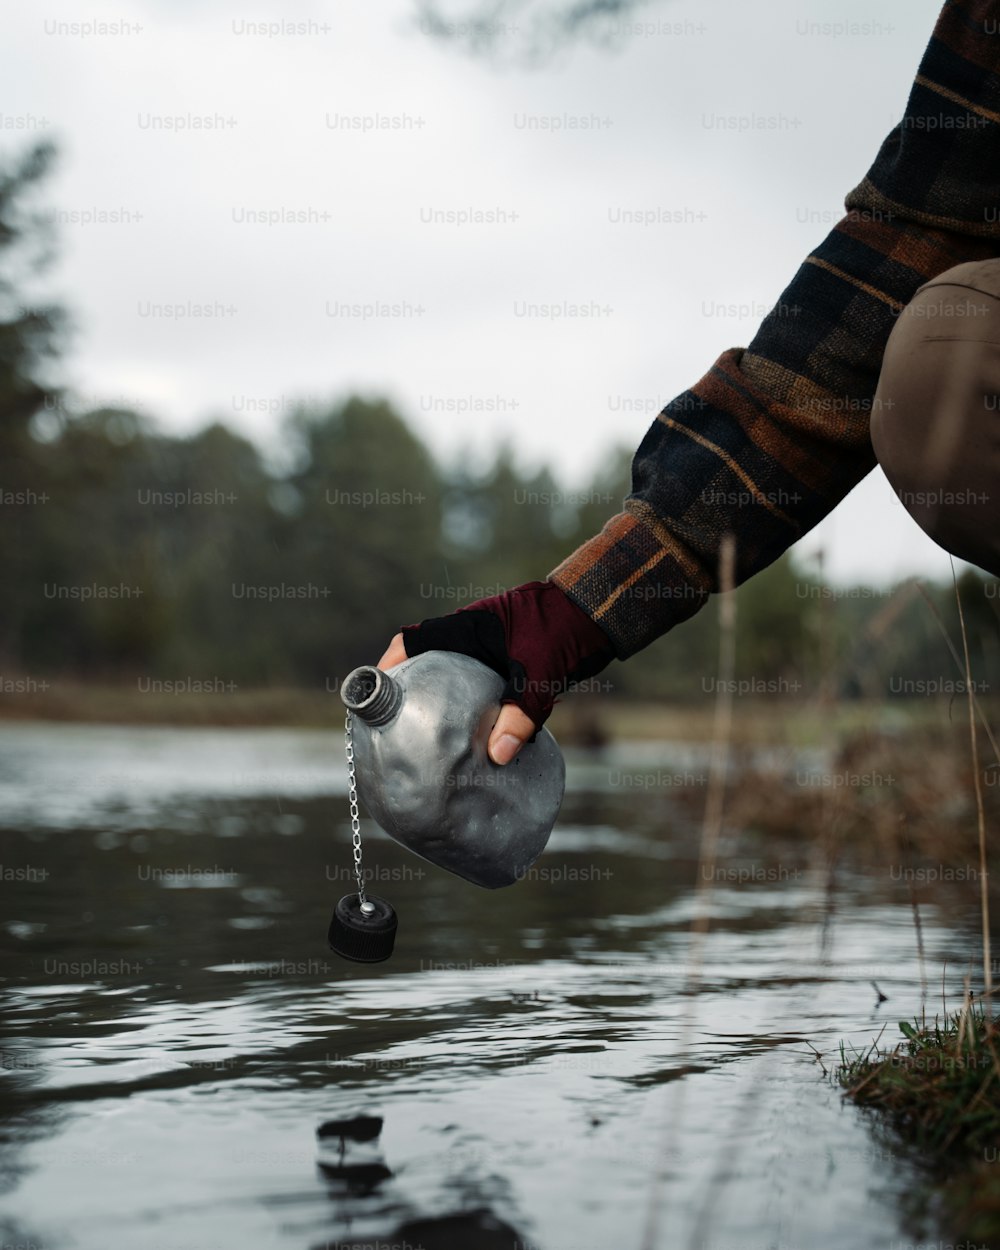 Una persona está sosteniendo una jarra de agua en el agua